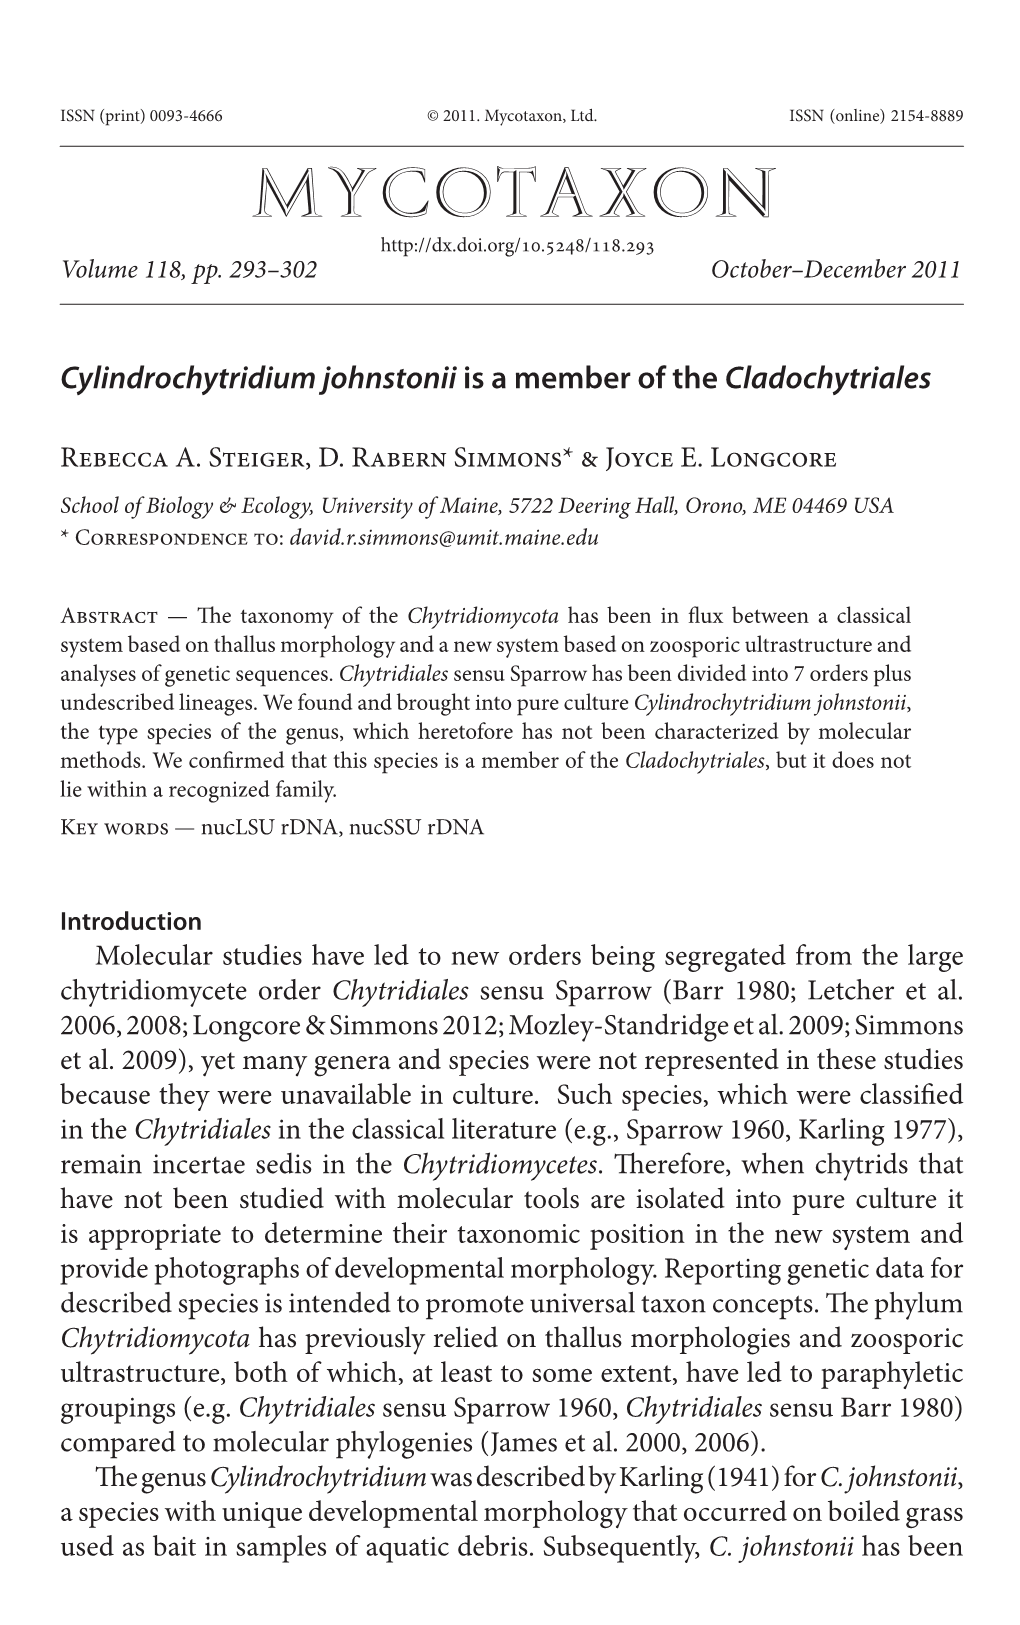 &lt;I&gt;Cylindrochytridium Johnstonii&lt;/I&gt;